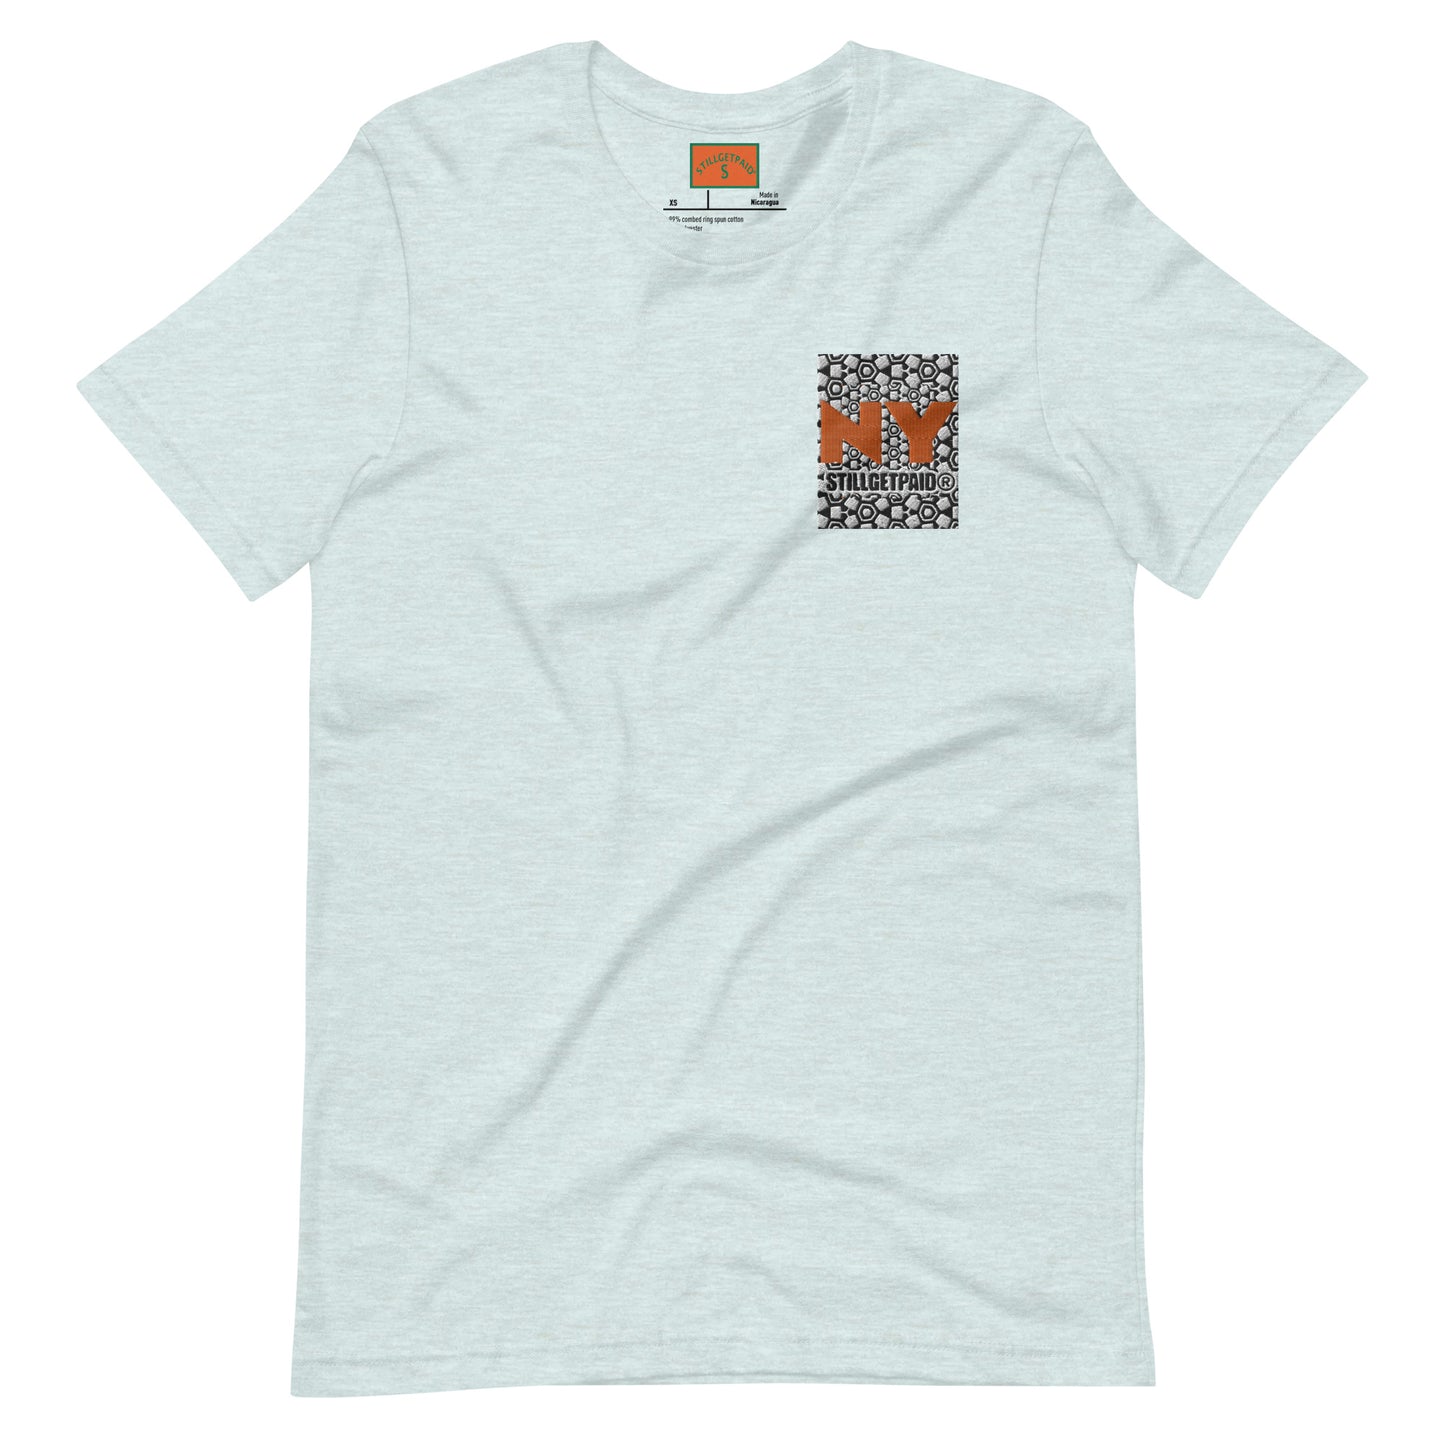 STILLGETPAID® APPAREL t-shirt